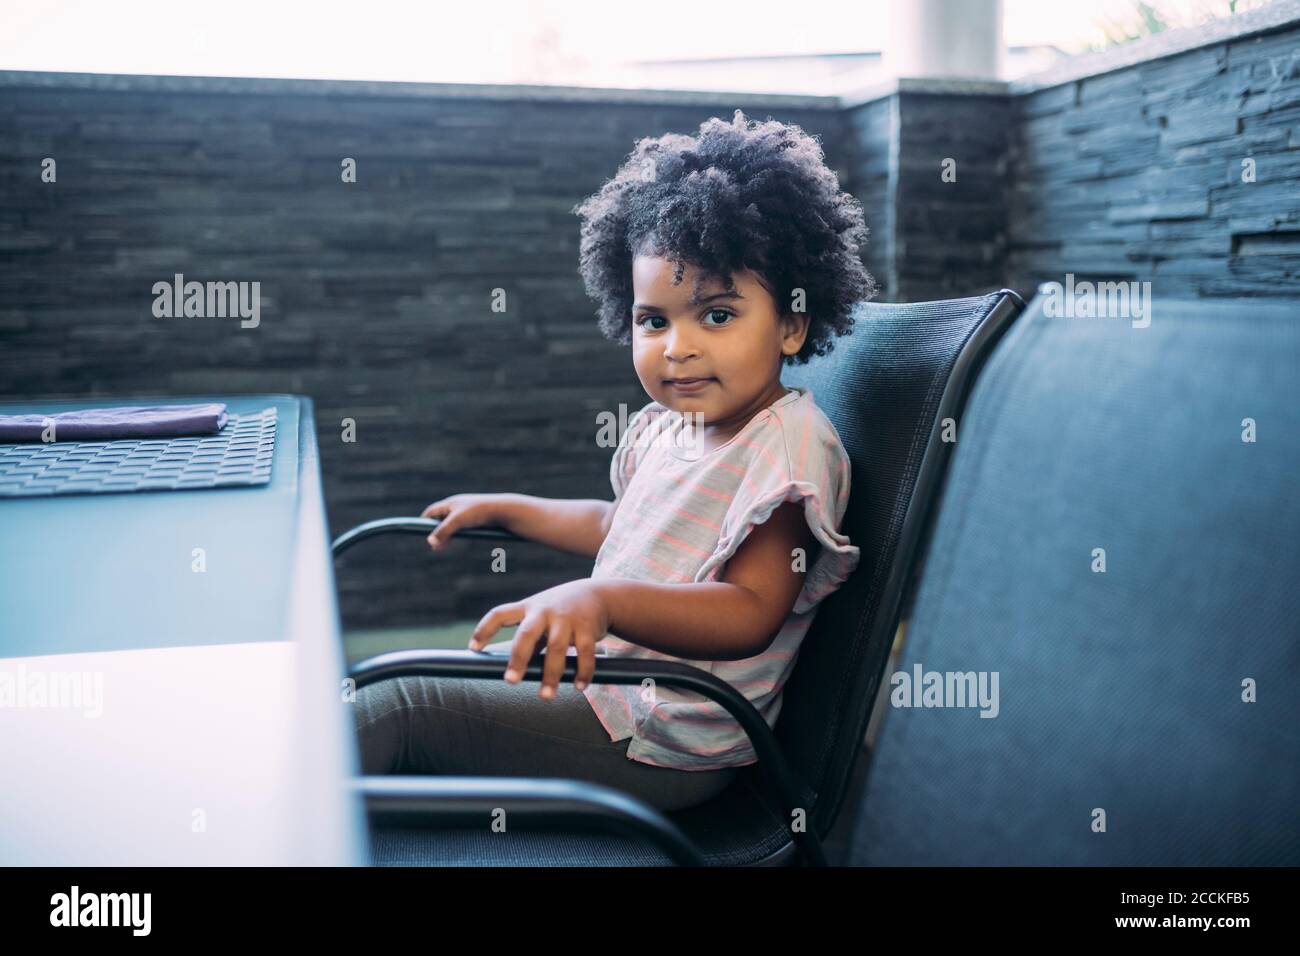 Nettes Baby Mädchen mit lockigen Haaren auf Stuhl sitzen Zu Hause  Stockfotografie - Alamy